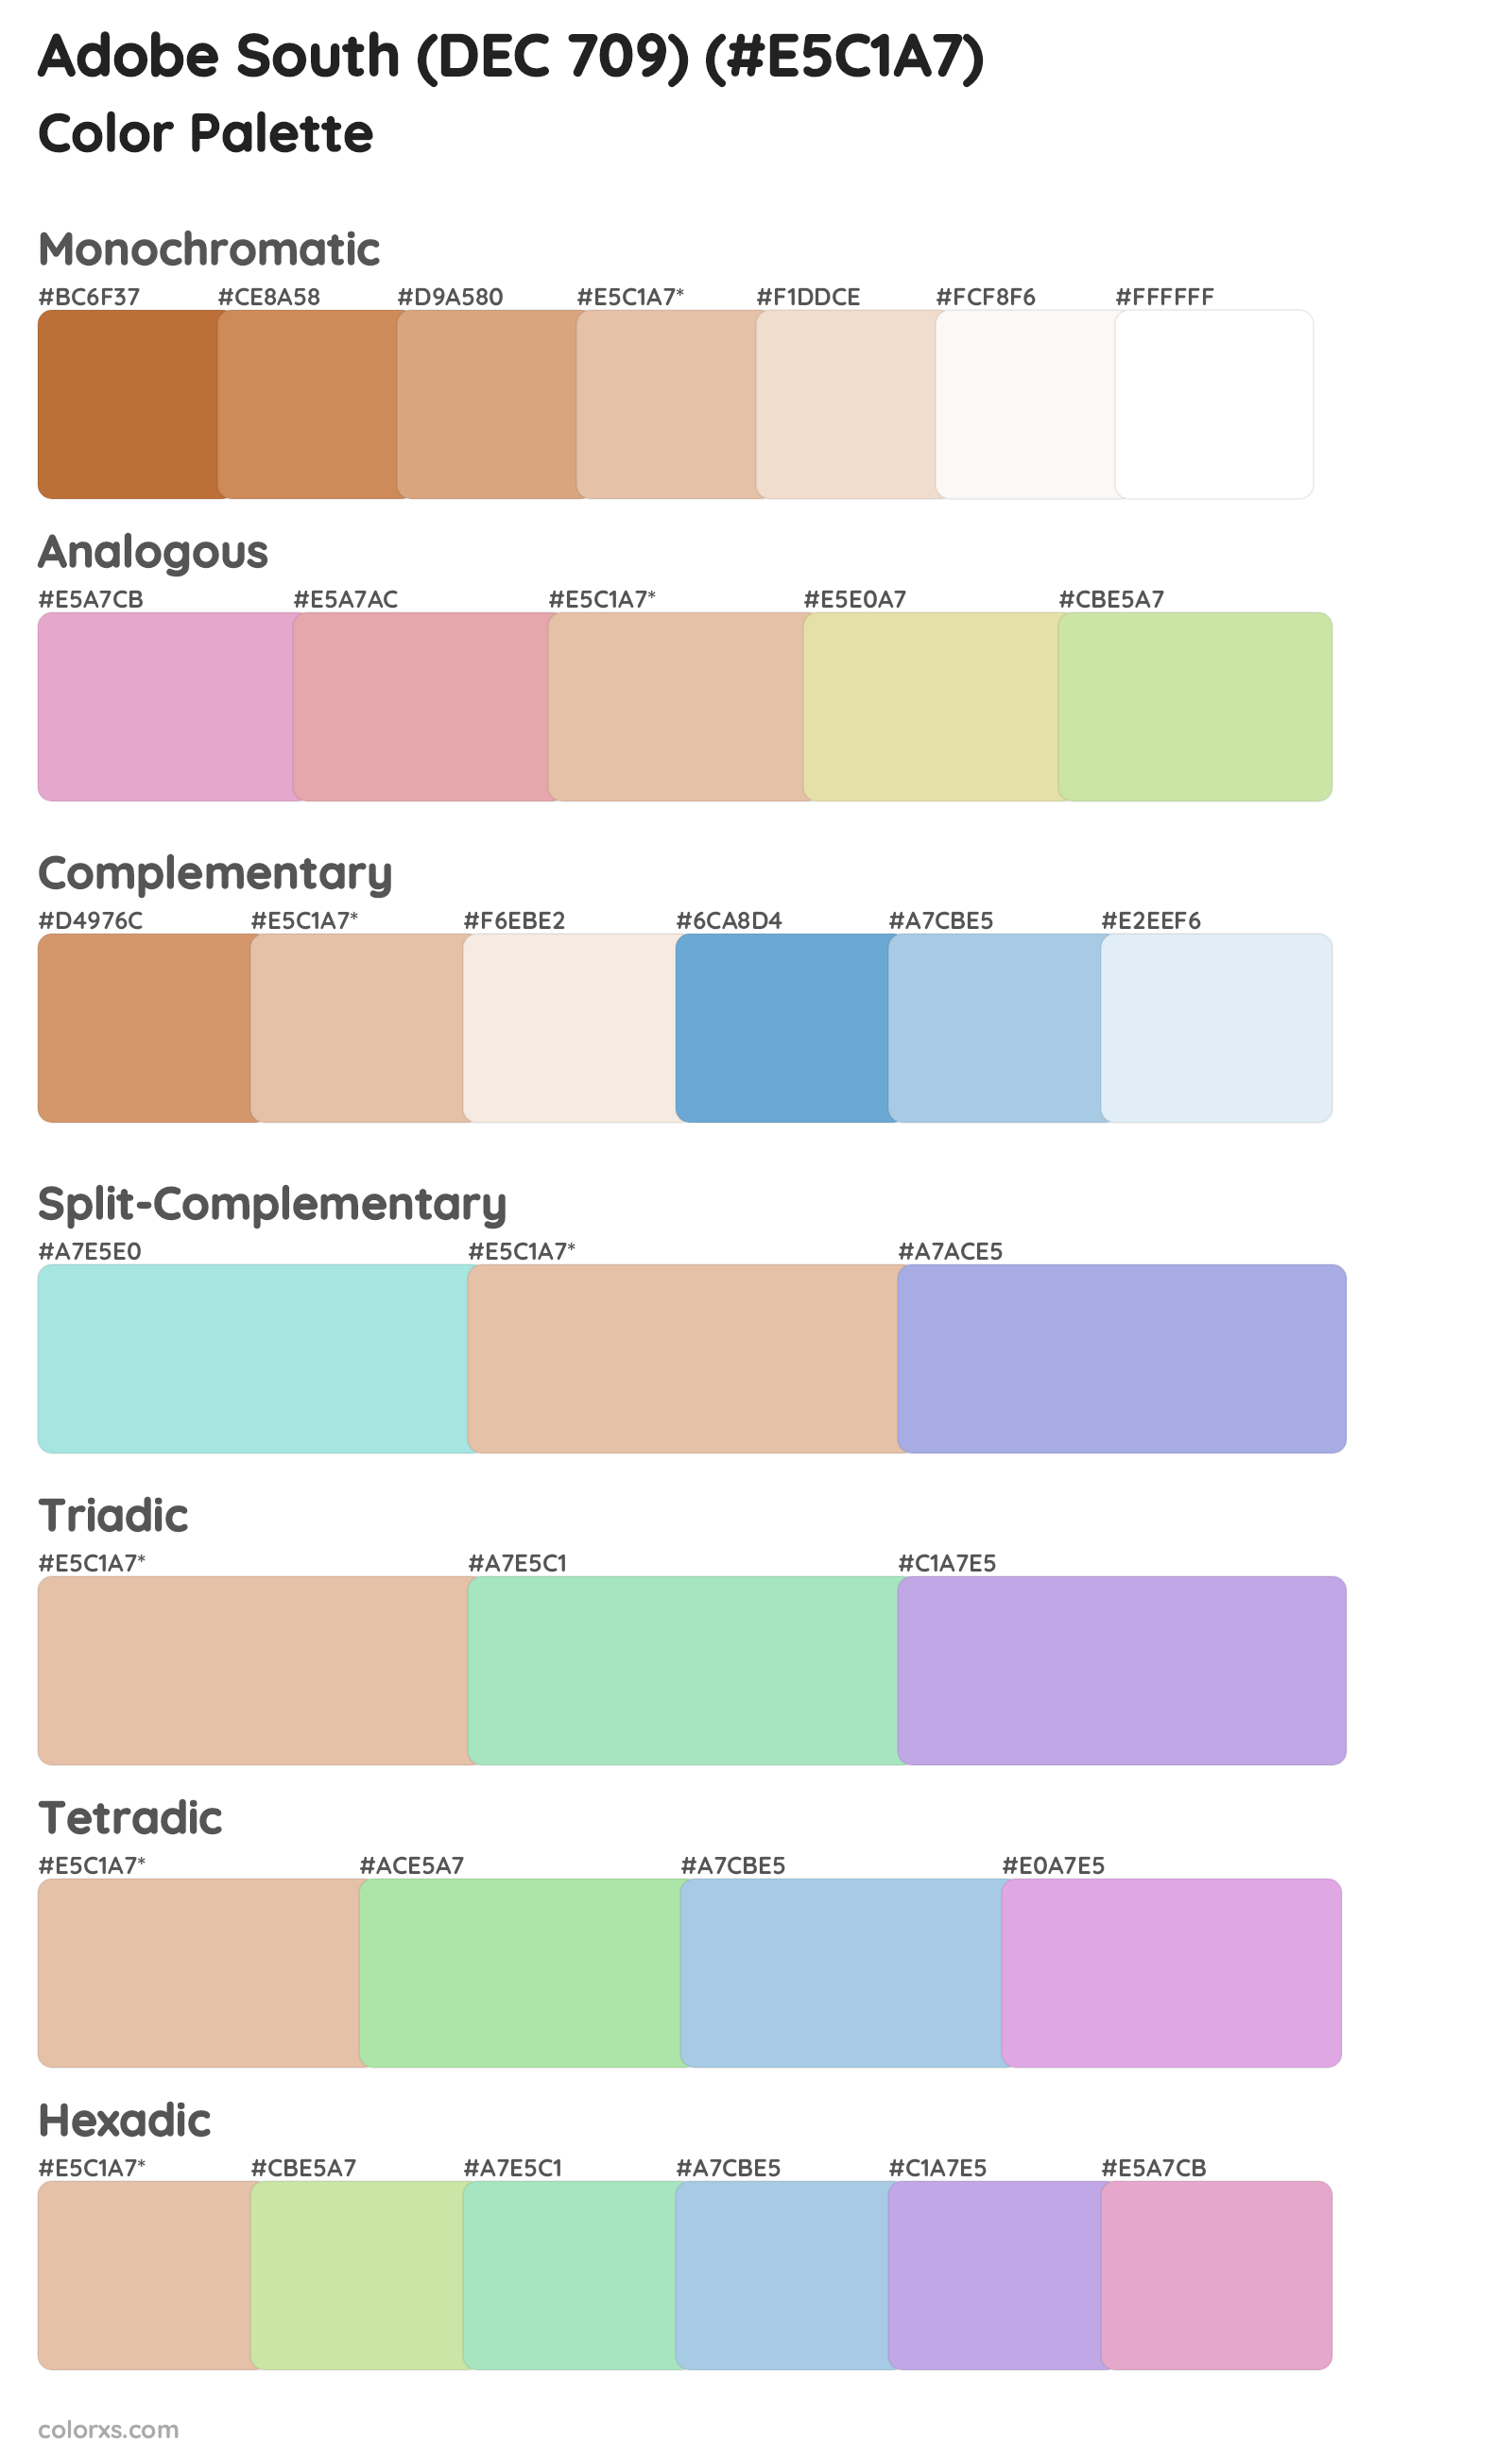 Adobe South (DEC 709) Color Scheme Palettes